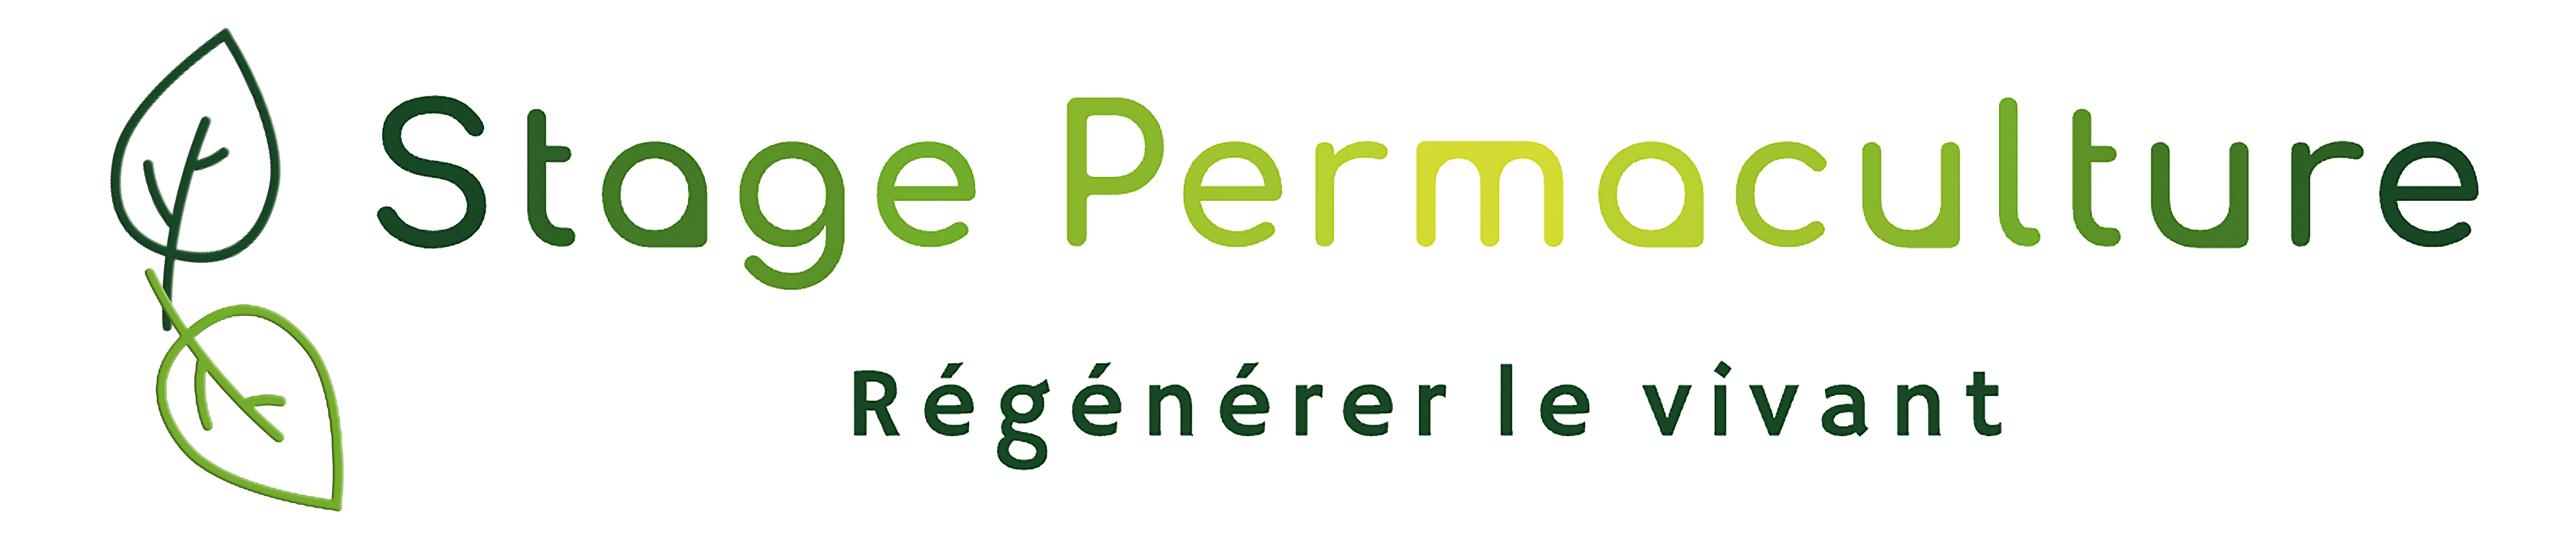 Stage Permaculture l stage-permaculture.com l Régénérer le vivant